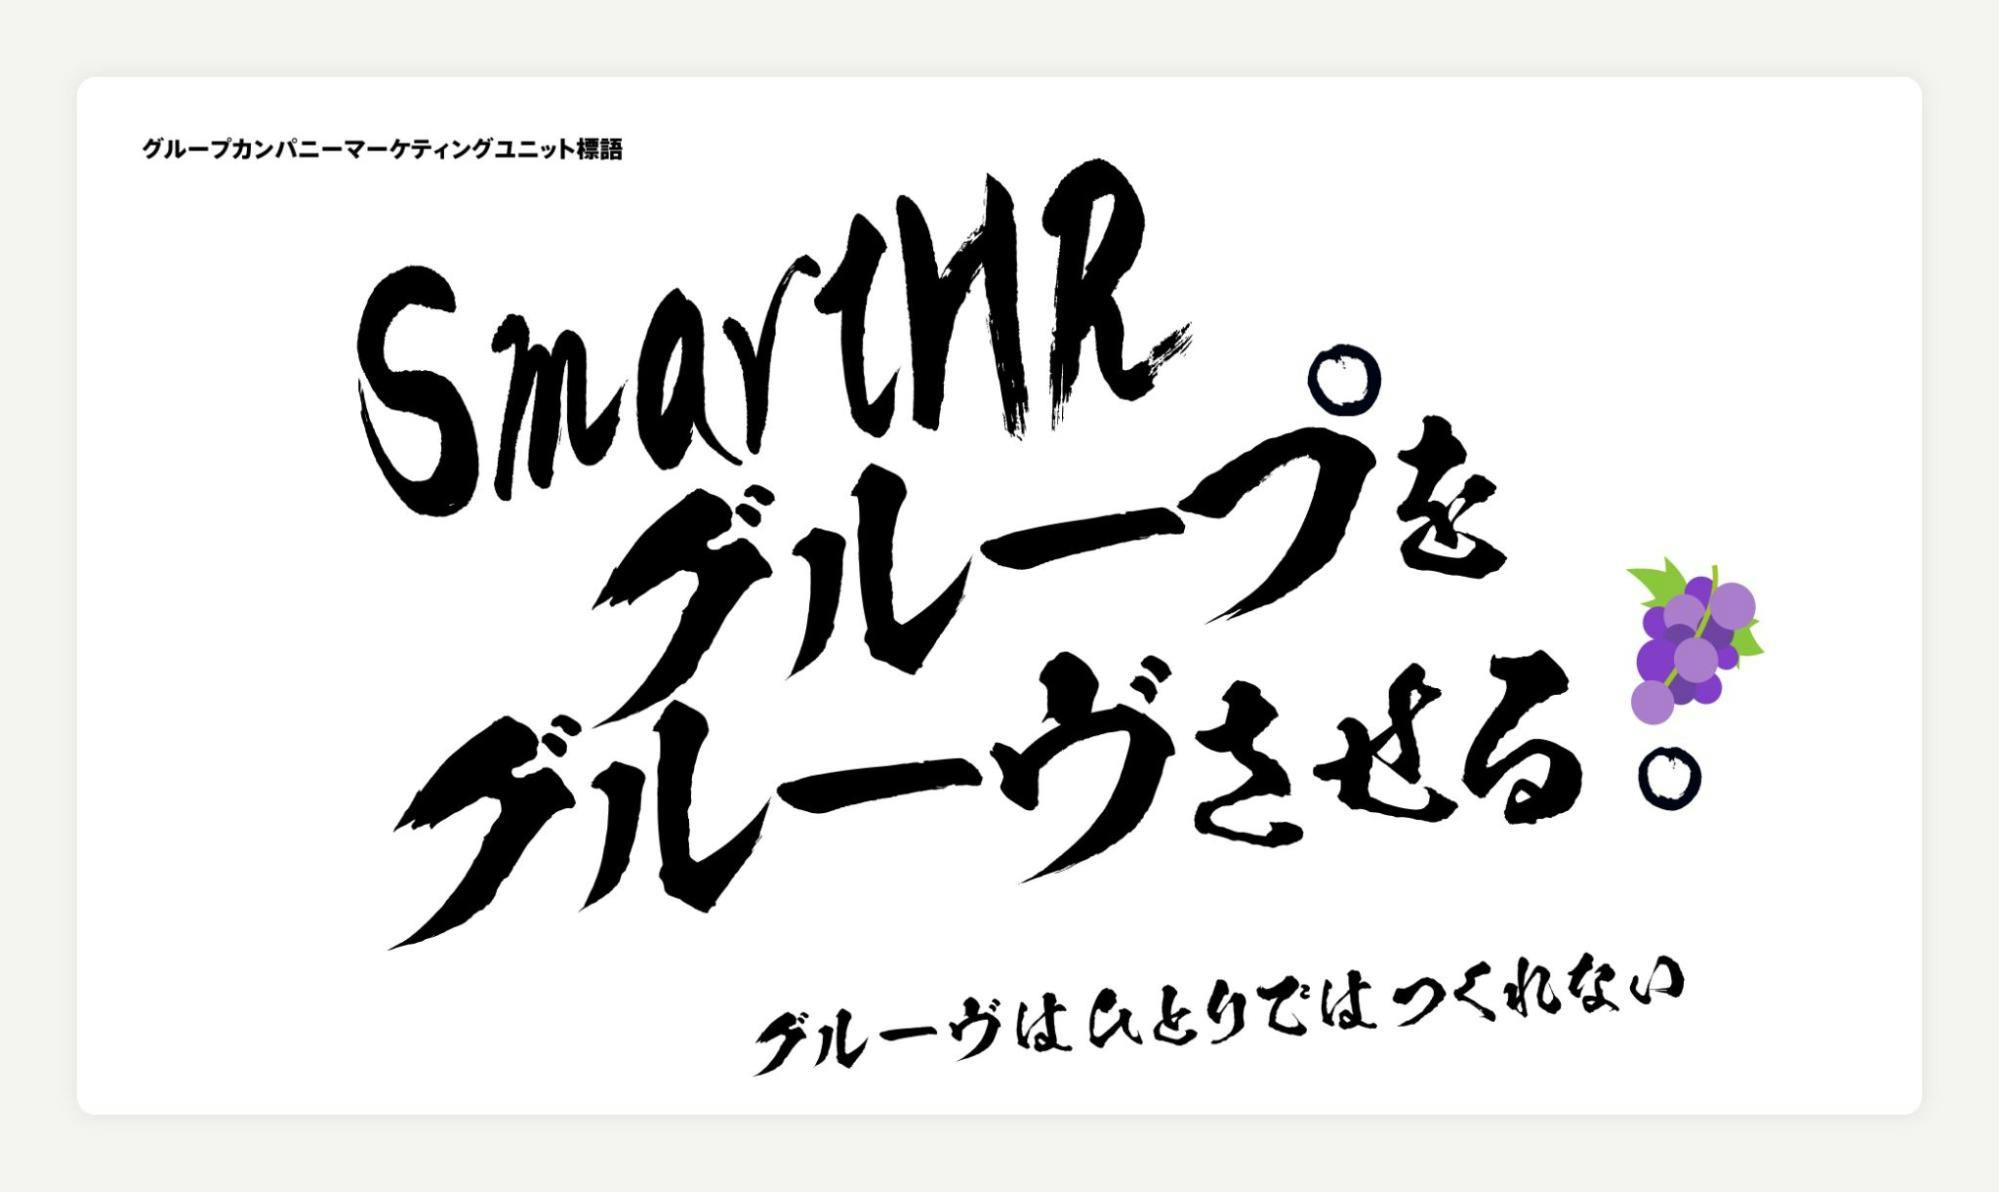 グループカンパニーマーケティングユニット標語「SmartHRグループをグルーヴさせる。グルーヴは一人ではつくれない」と書かれた画像。ぶどうのイラストが付いている。